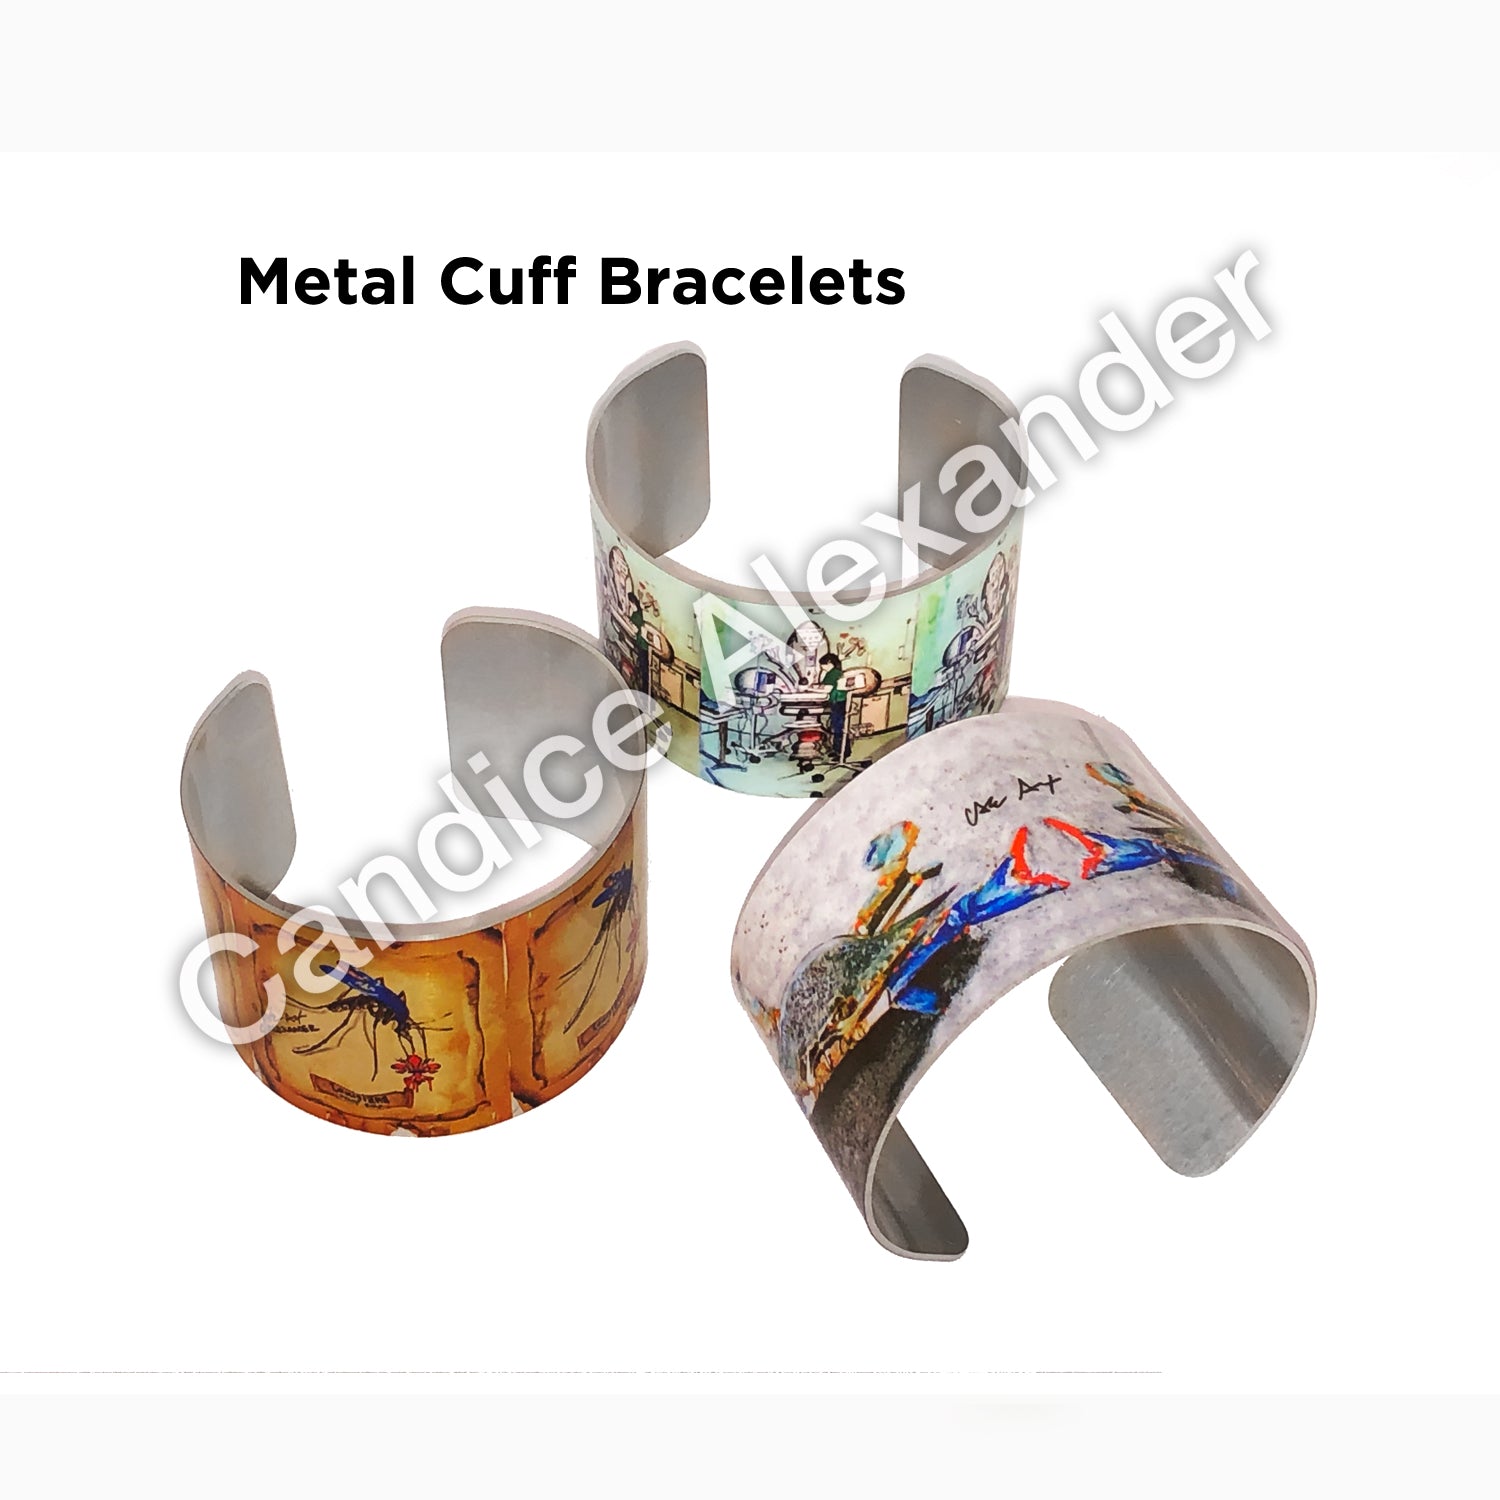 Metal Cuffs